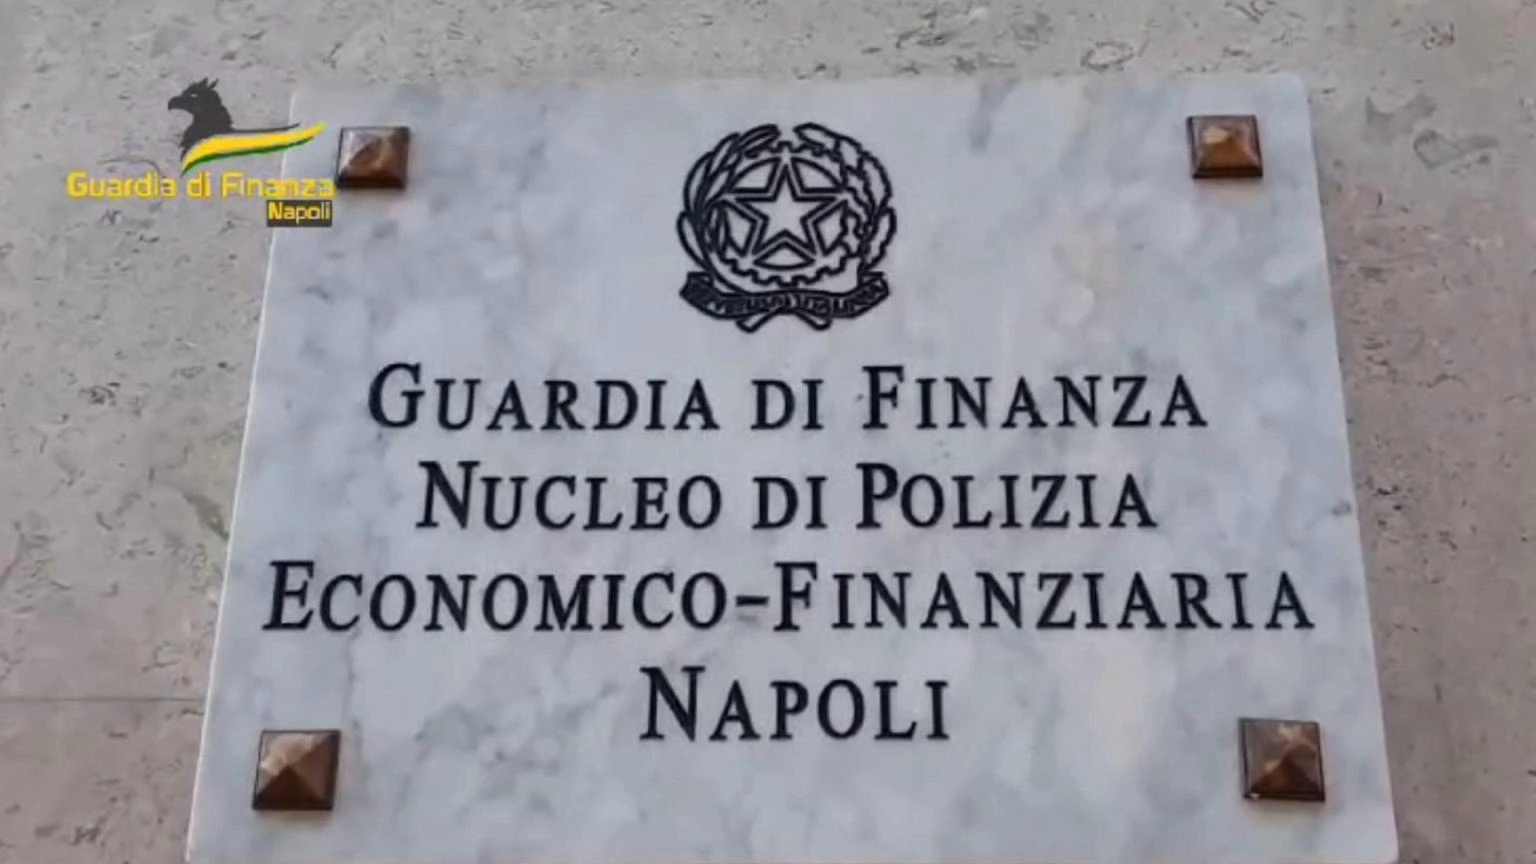 Camorra e riciclaggio, sequestrata nota pizzeria a Napoli